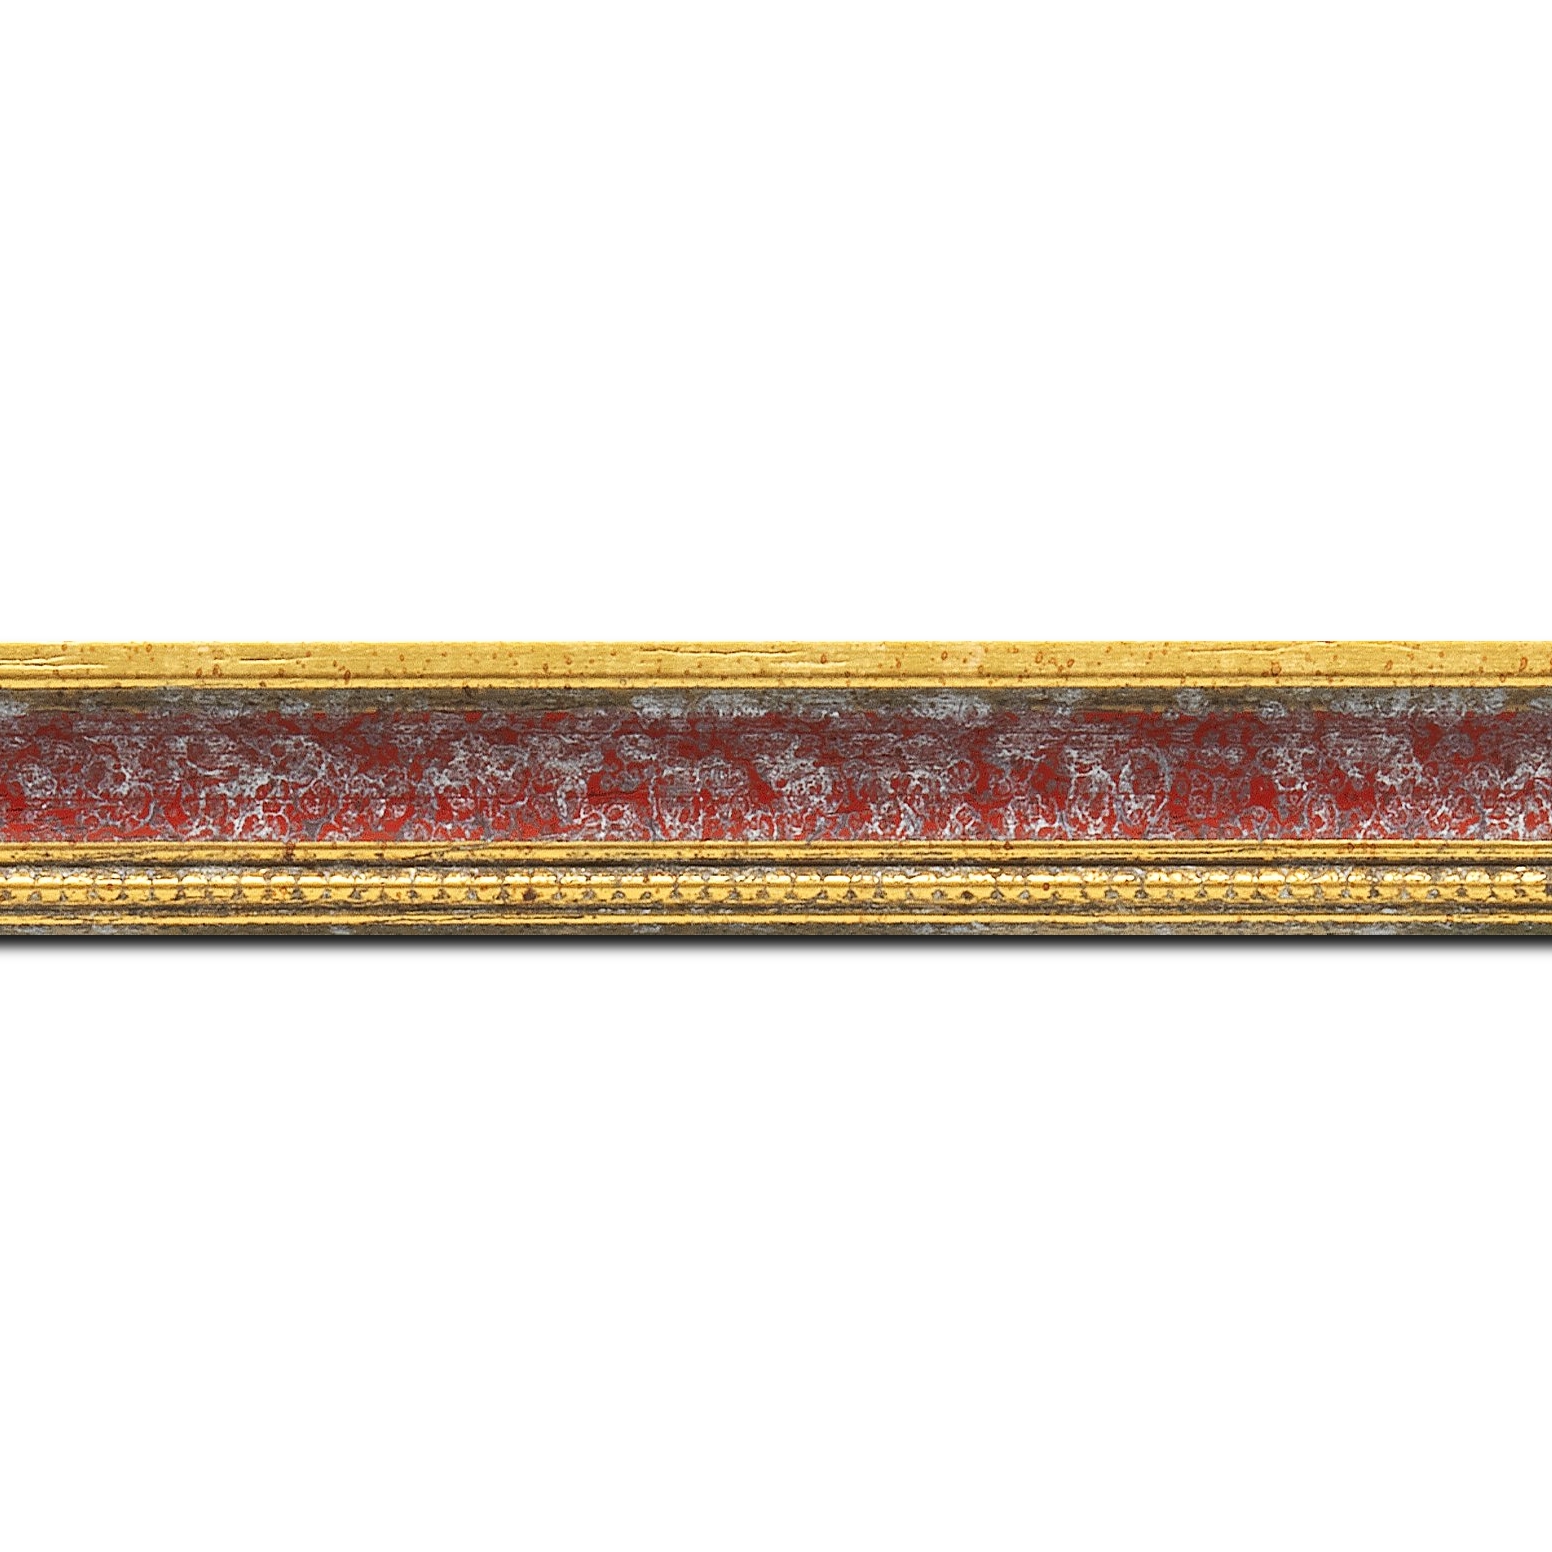 Baguette longueur 1.40m bois profil incurvé largeur 2.4cm  or antique gorge rouge cerise filet perle or